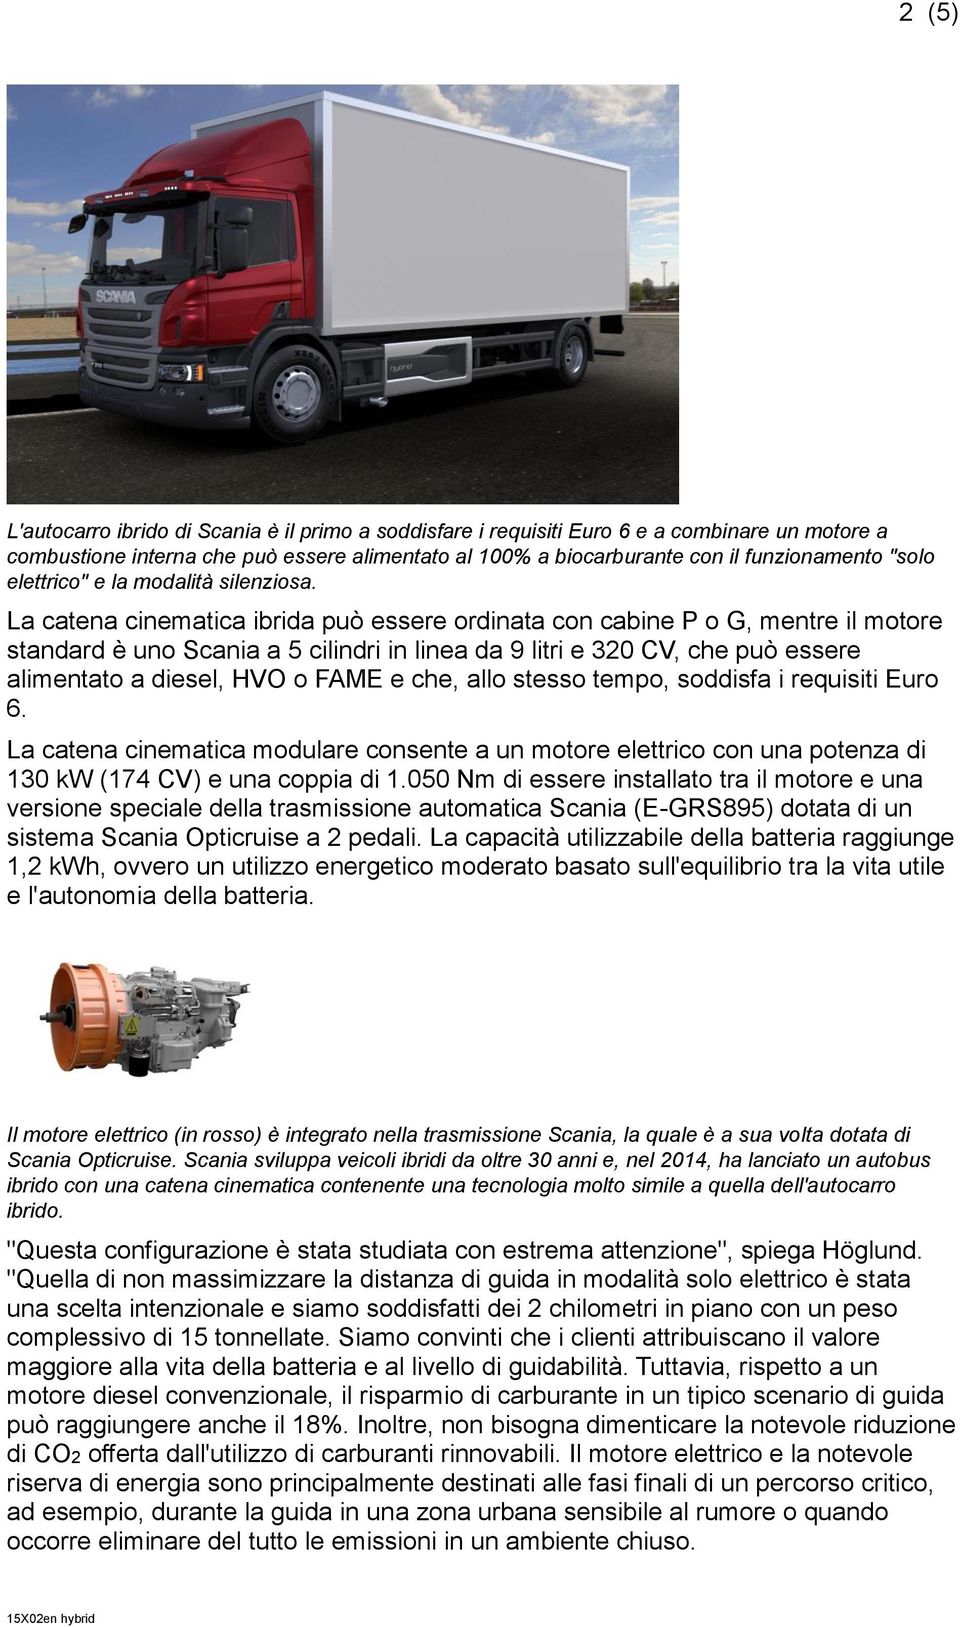 La catena cinematica ibrida può essere ordinata con cabine P o G, mentre il motore standard è uno Scania a 5 cilindri in linea da 9 litri e 320 CV, che può essere alimentato a diesel, HVO o FAME e